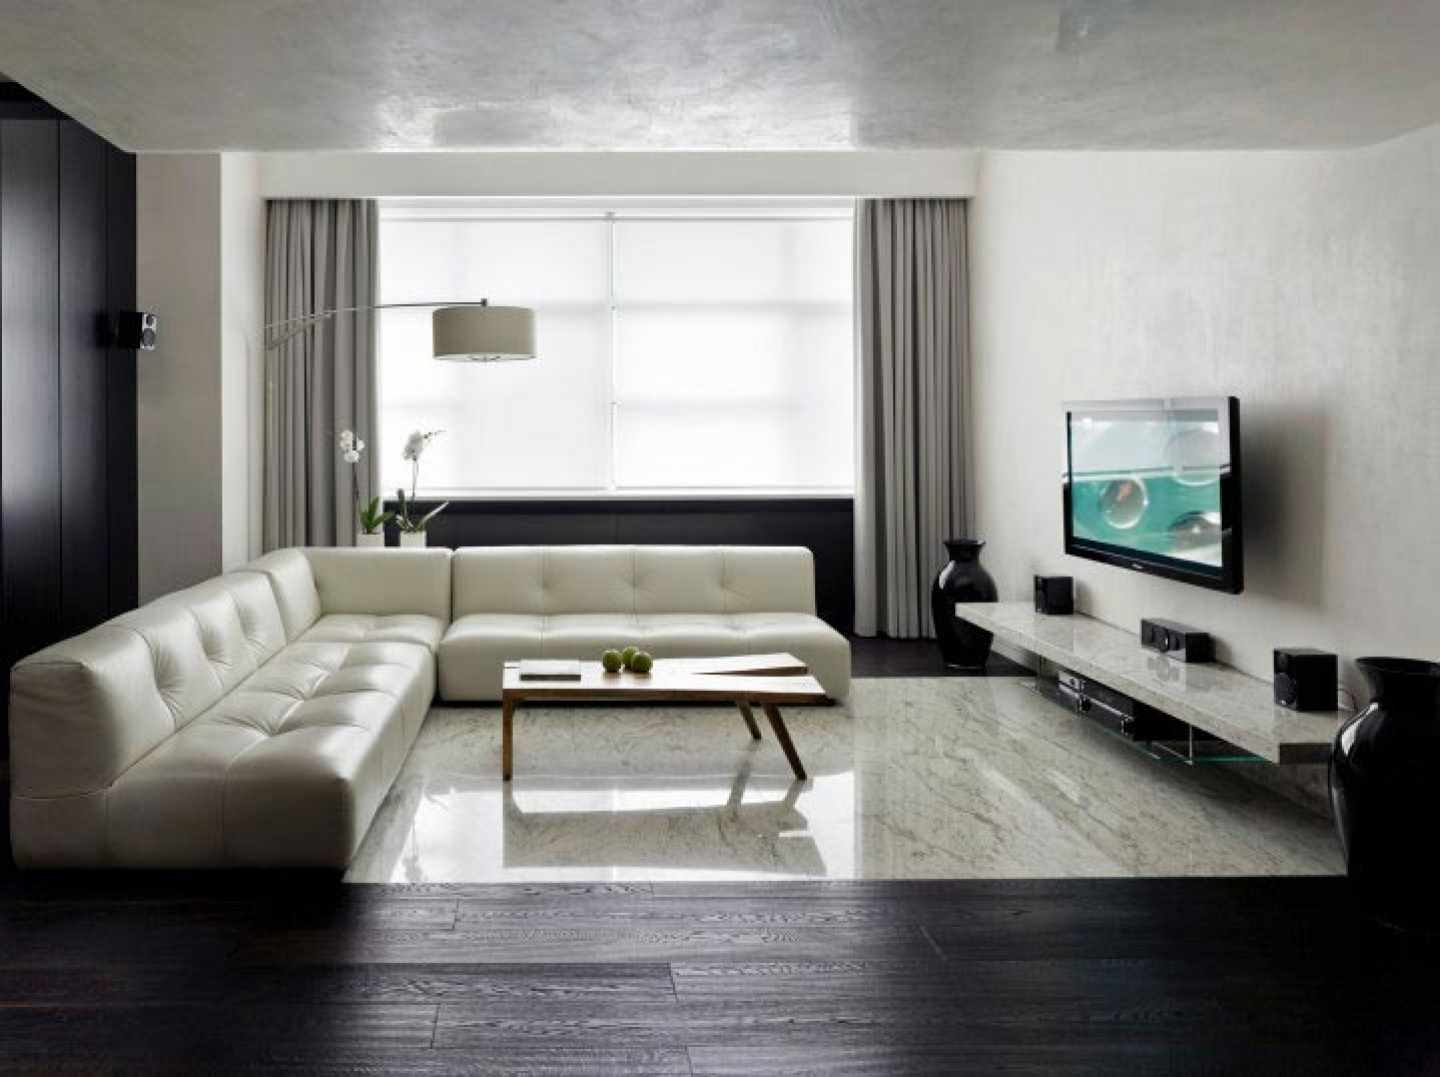 egy példa a nappali világos formatervezésének minimalista stílusban történő felhasználására